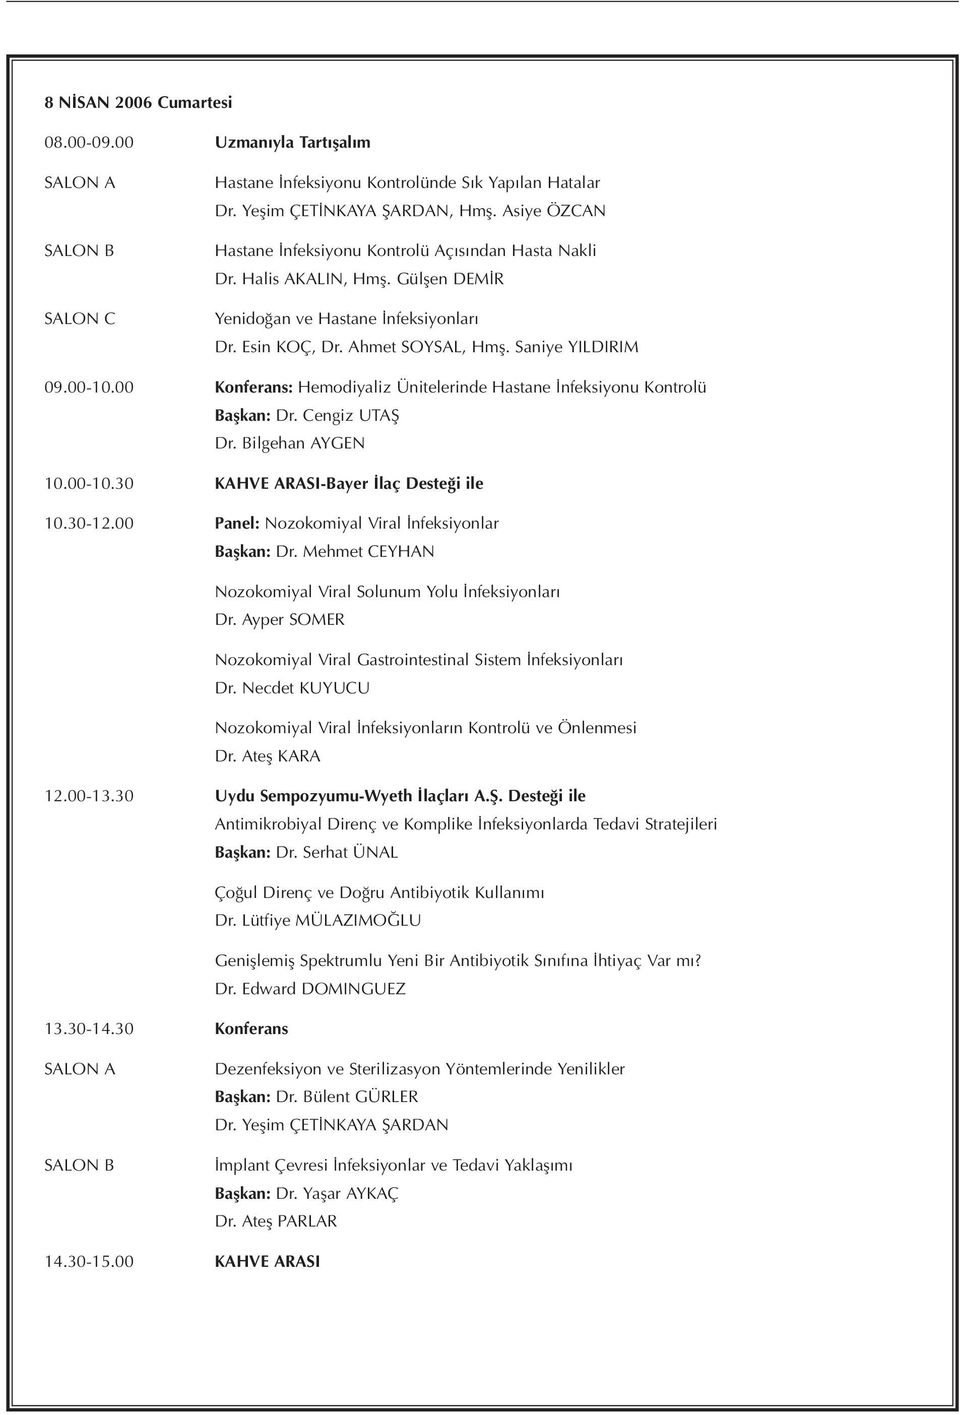 00 Konferans: Hemodiyaliz Ünitelerinde Hastane İnfeksiyonu Kontrolü Başkan: Dr. Cengiz UTAŞ Dr. Bilgehan AYGEN 10.00-10.30 KAHVE ARASI-Bayer İlaç Desteği ile 10.30-12.